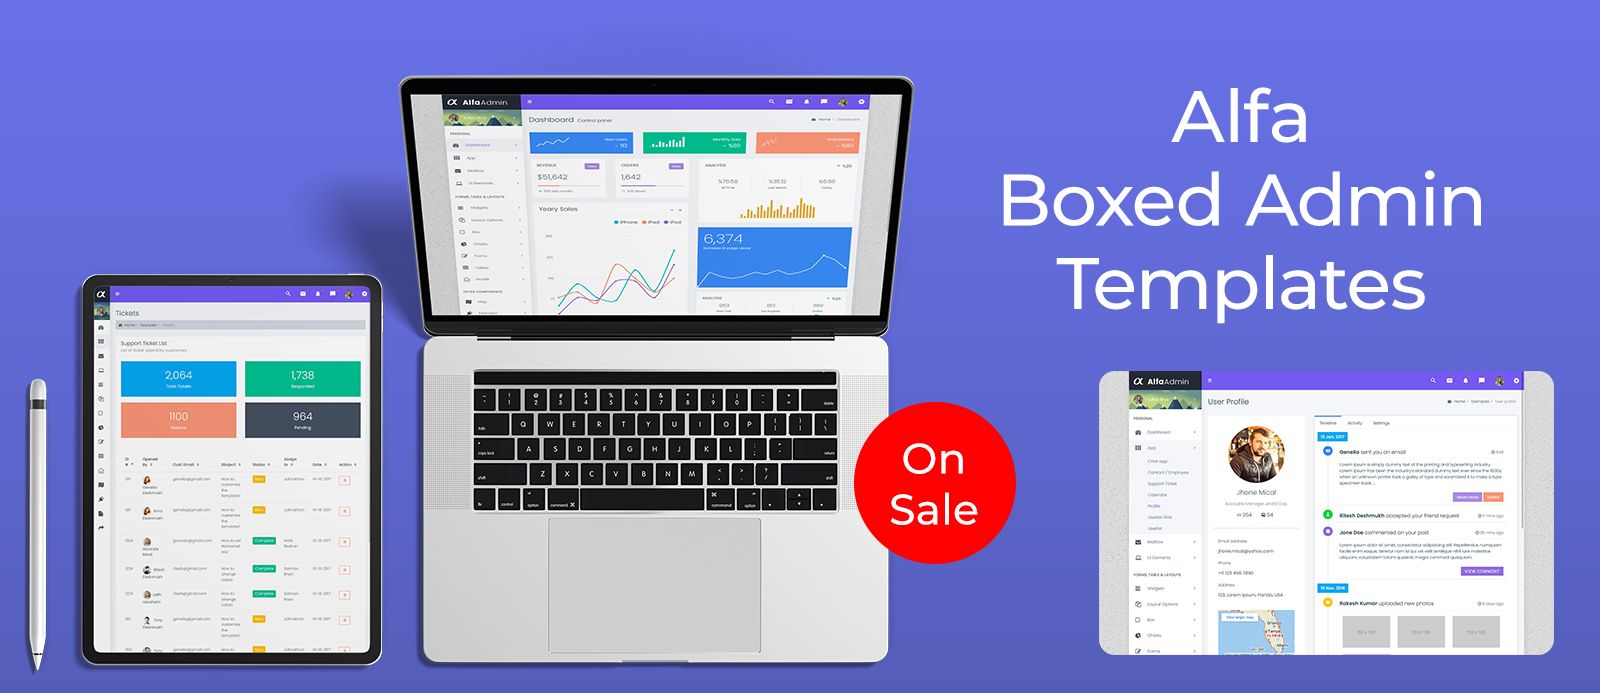 Premium Admin Template Bootstrap Dashboard – Alfa Boxed